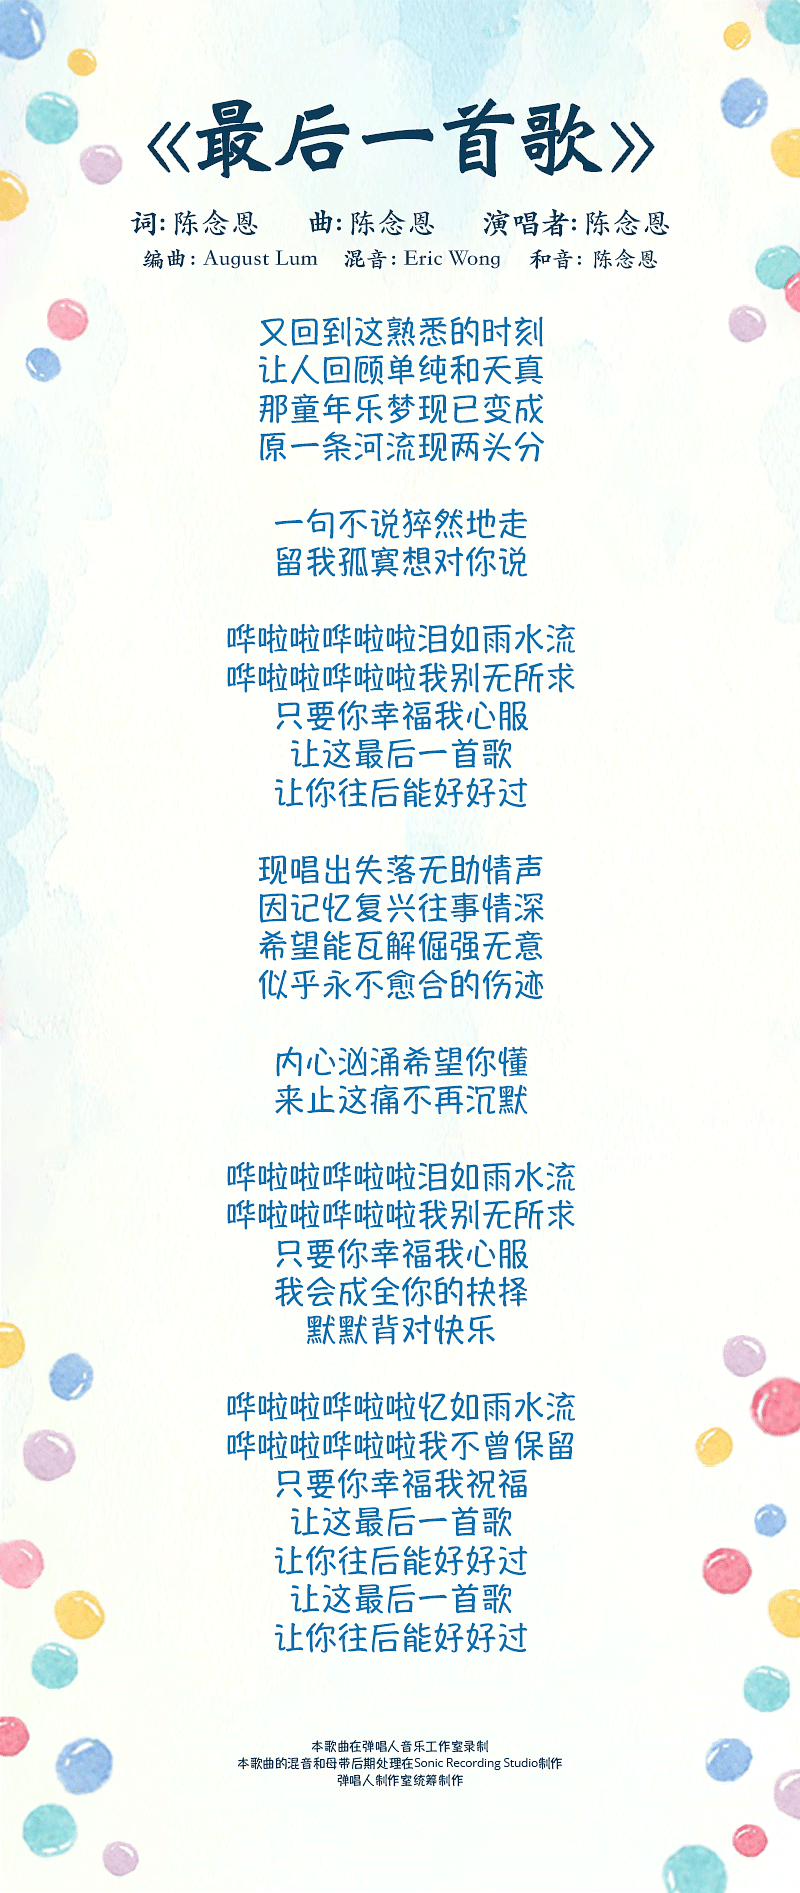 dang-chu-de-zi-ji-lyrics-mobile.png